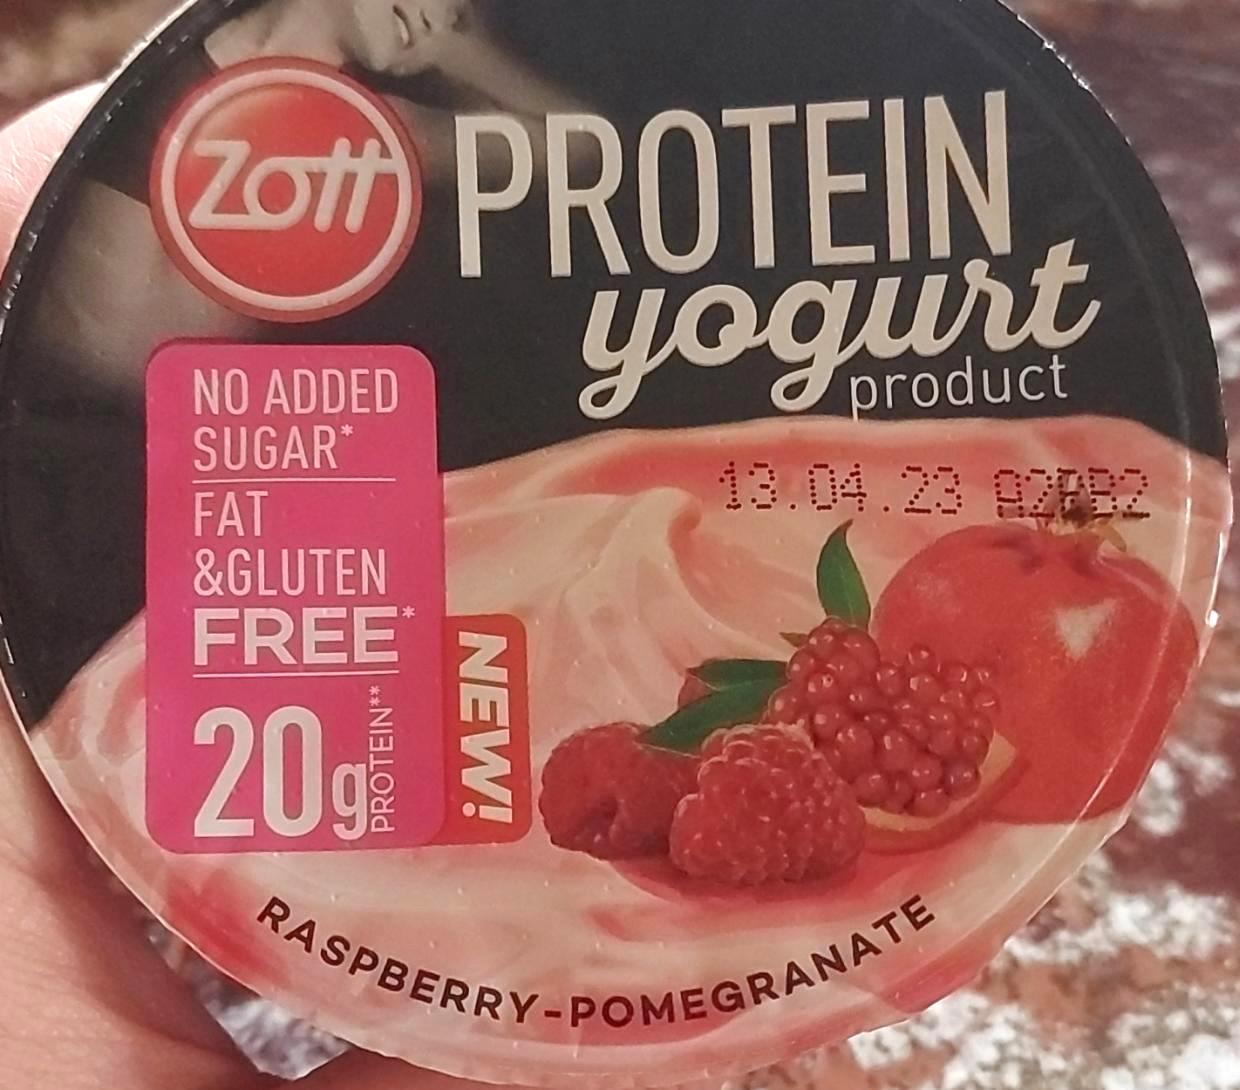 Képek - Protein yogurt Málnás-gránátalmás Zott